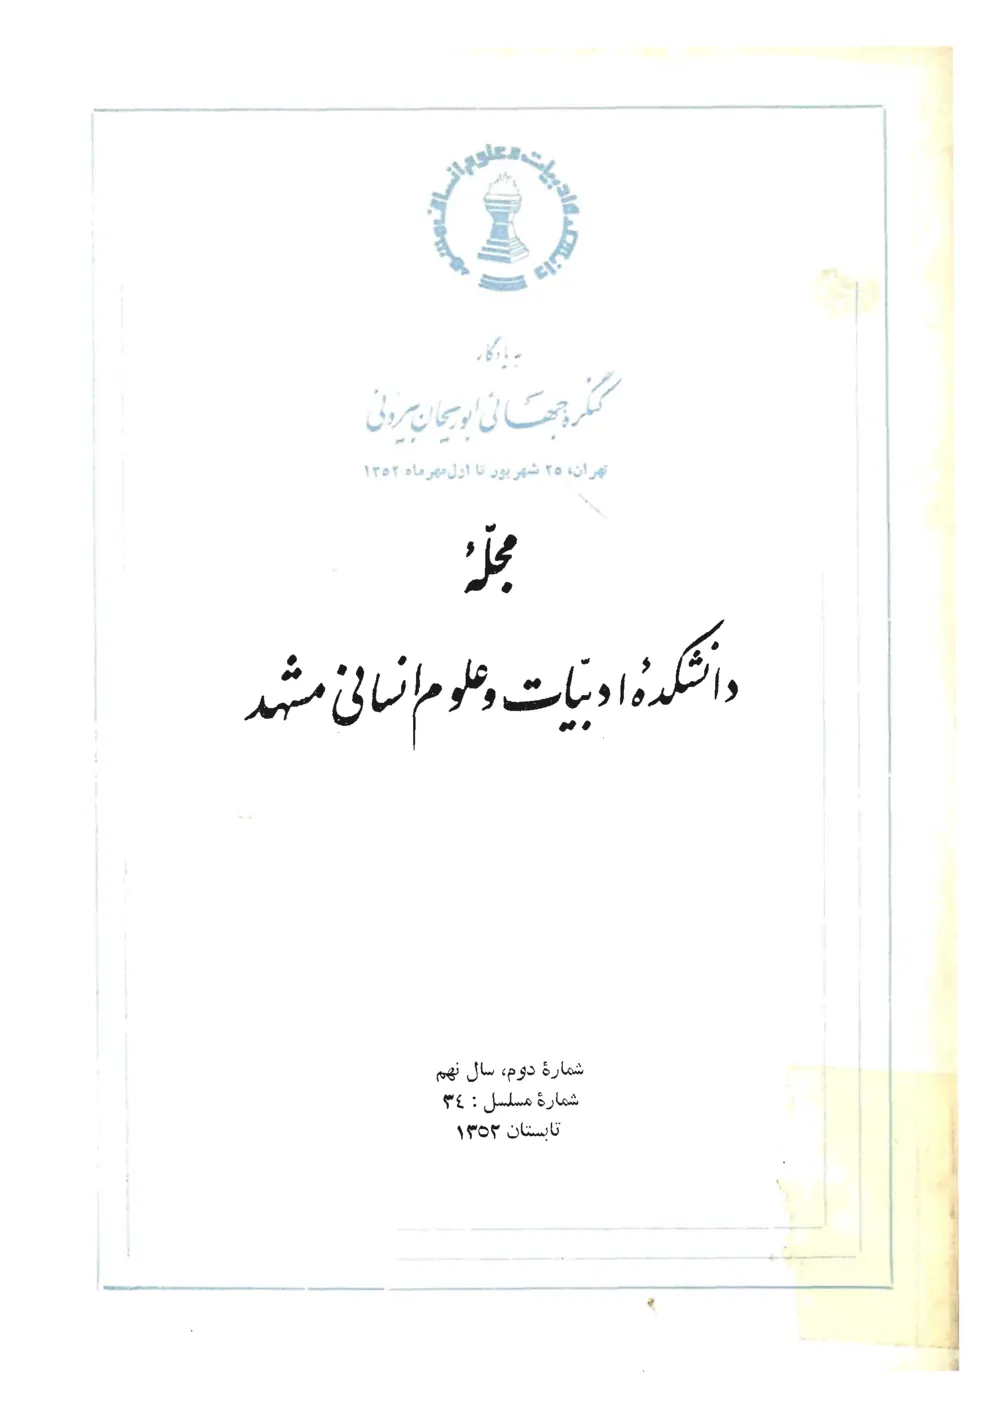 مجله دانشکده ادبیات و علوم انسانی مشهد - شماره 2 - شهریور و مهر 1352